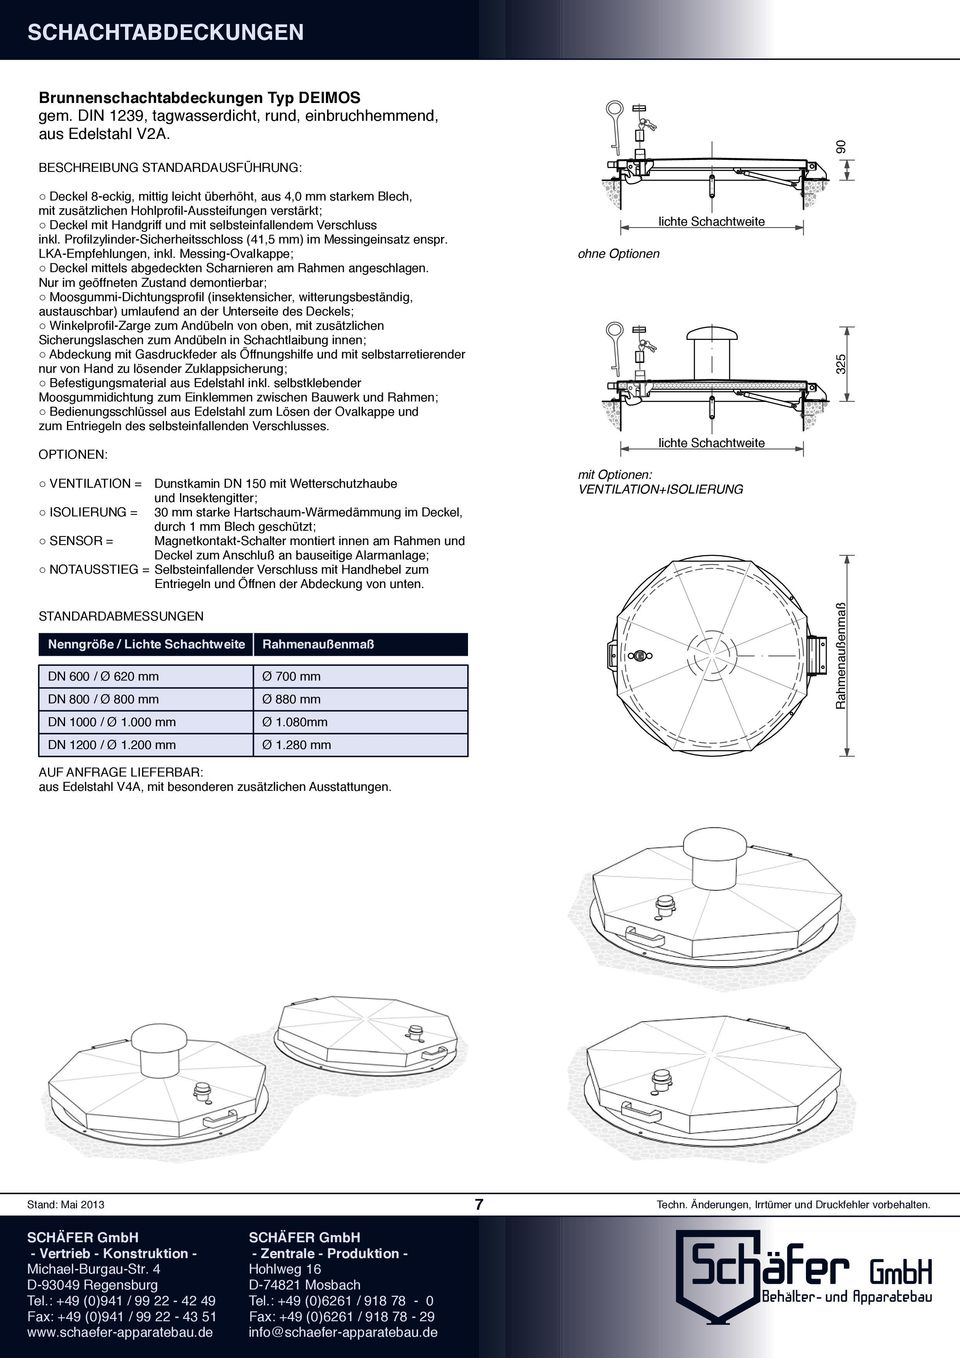 Profilzylinder-Sicherheitsschloss (41,5 mm) im Messingeinsatz enspr. LKA-Empfehlungen, inkl. Messing-Ovalkappe; Deckel mittels abgedeckten Scharnieren am Rahmen angeschlagen.